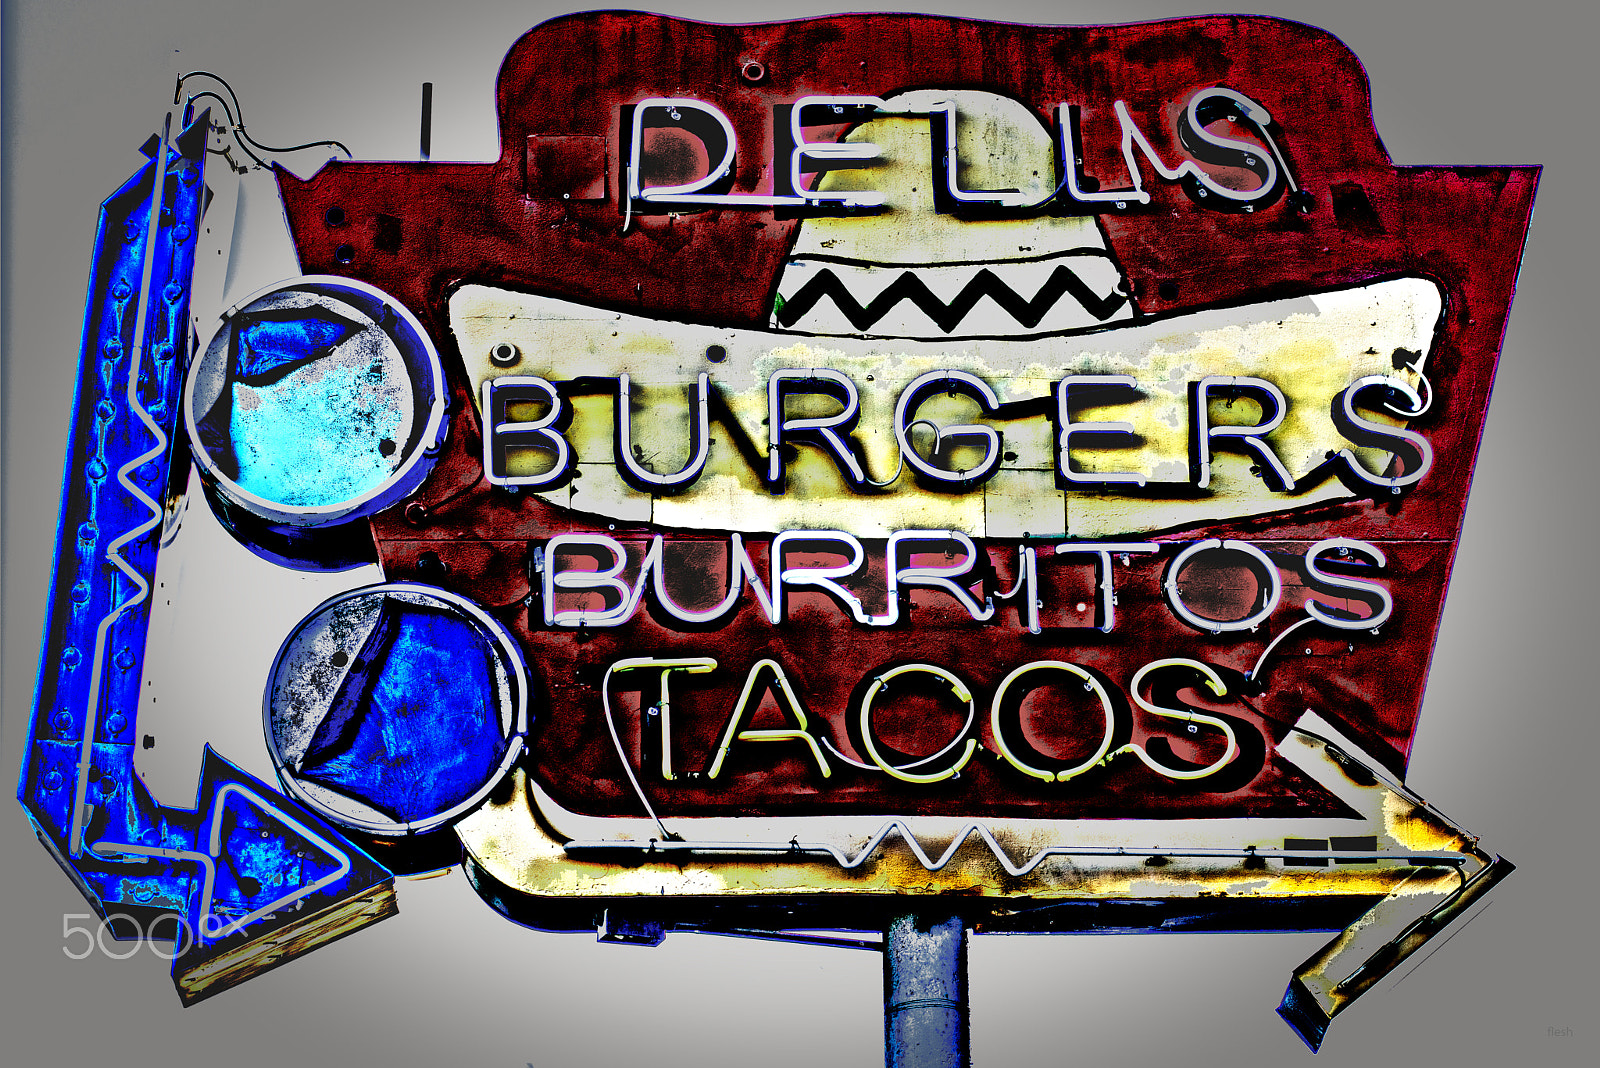 Nikon D800 sample photo. Dells burgers burritos tacos photography